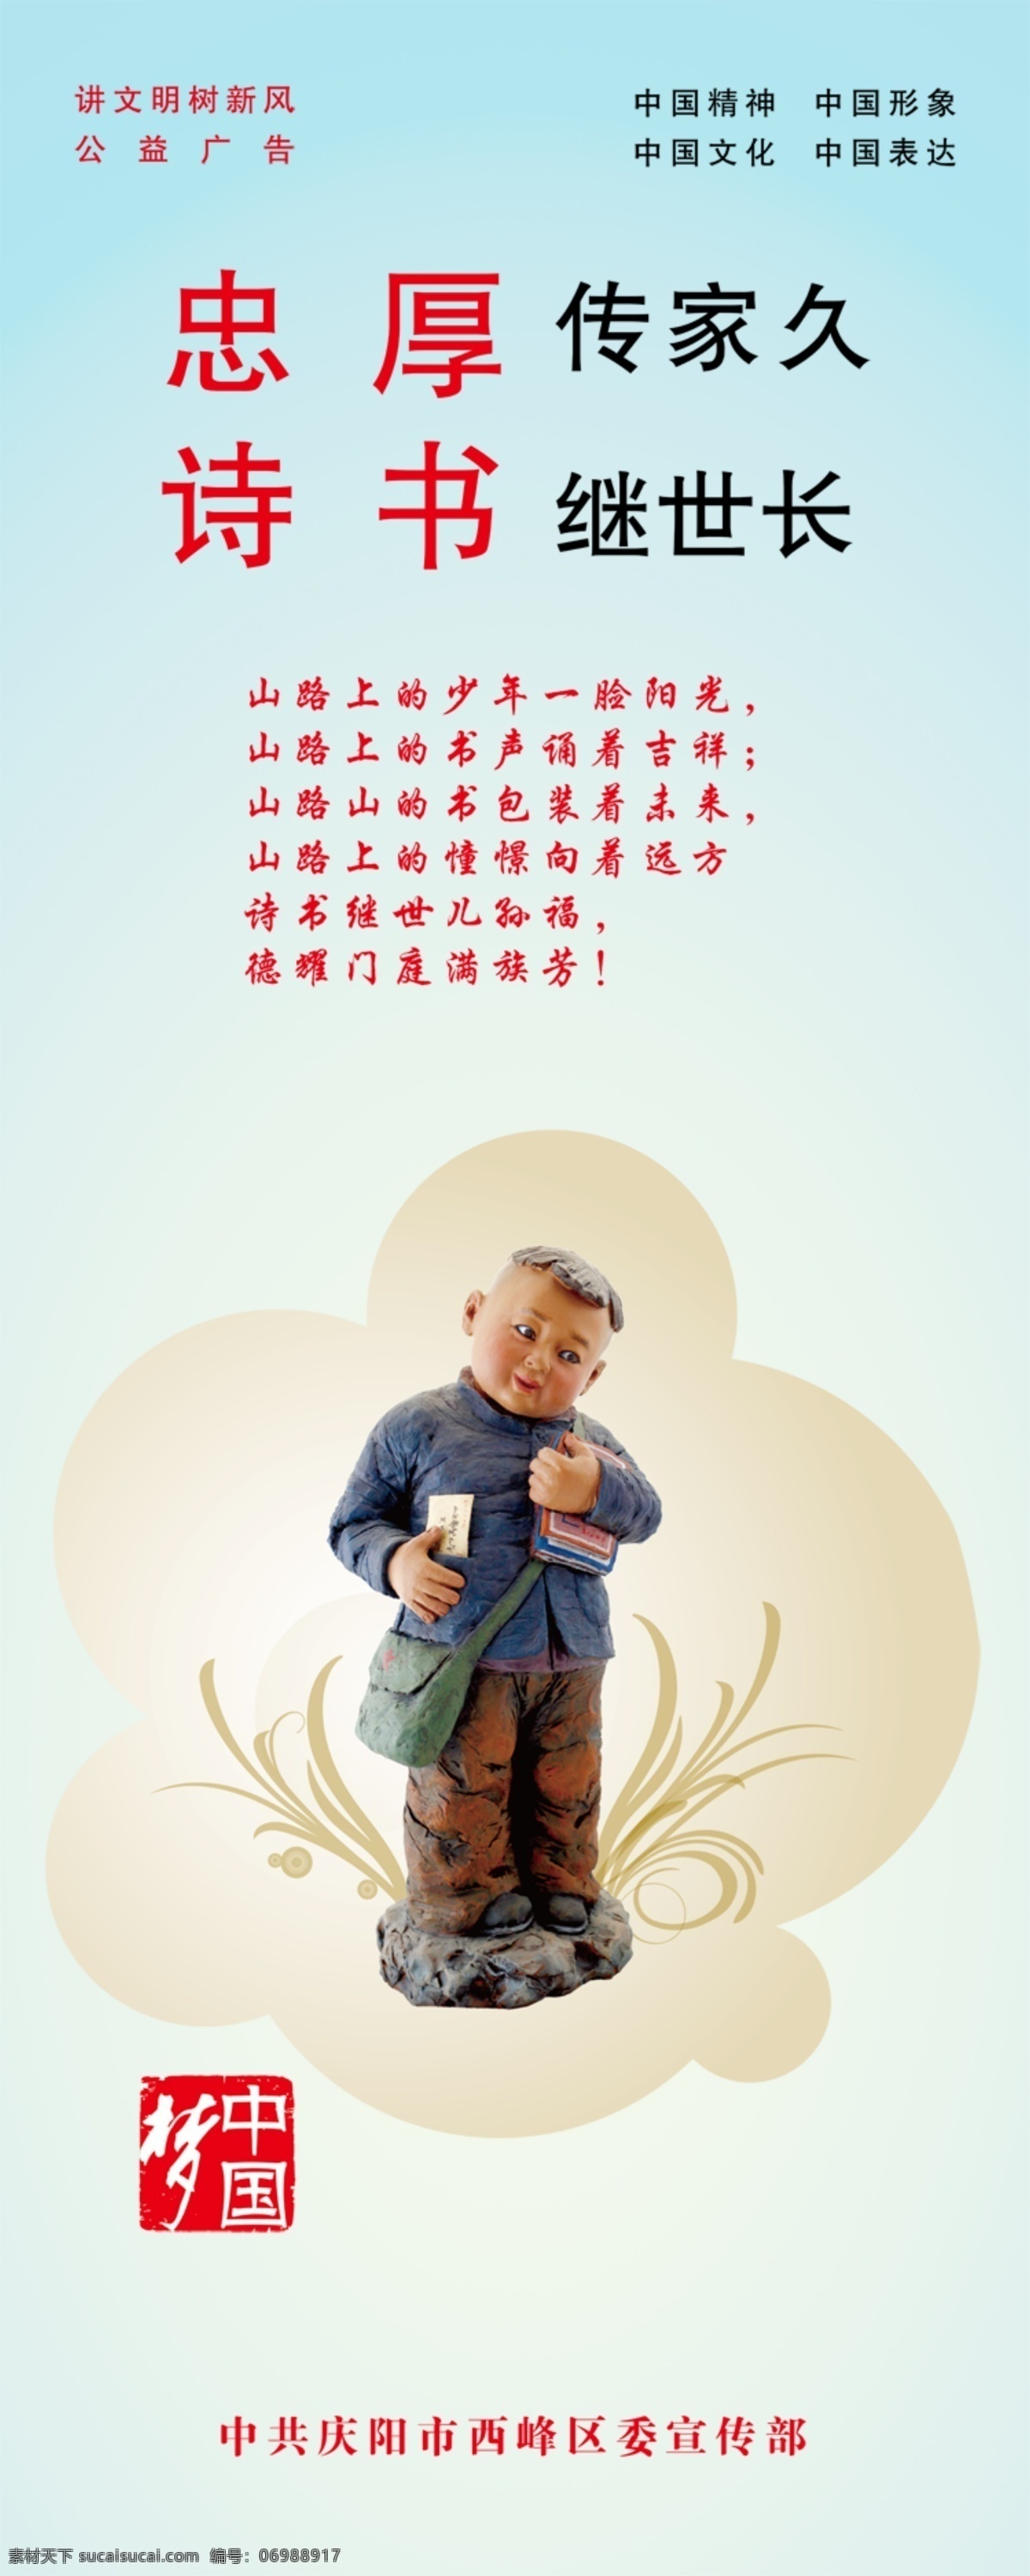 中国 梦 系列 psd文件 儿童 公益广告 背书包的小孩 展板 其他展板设计